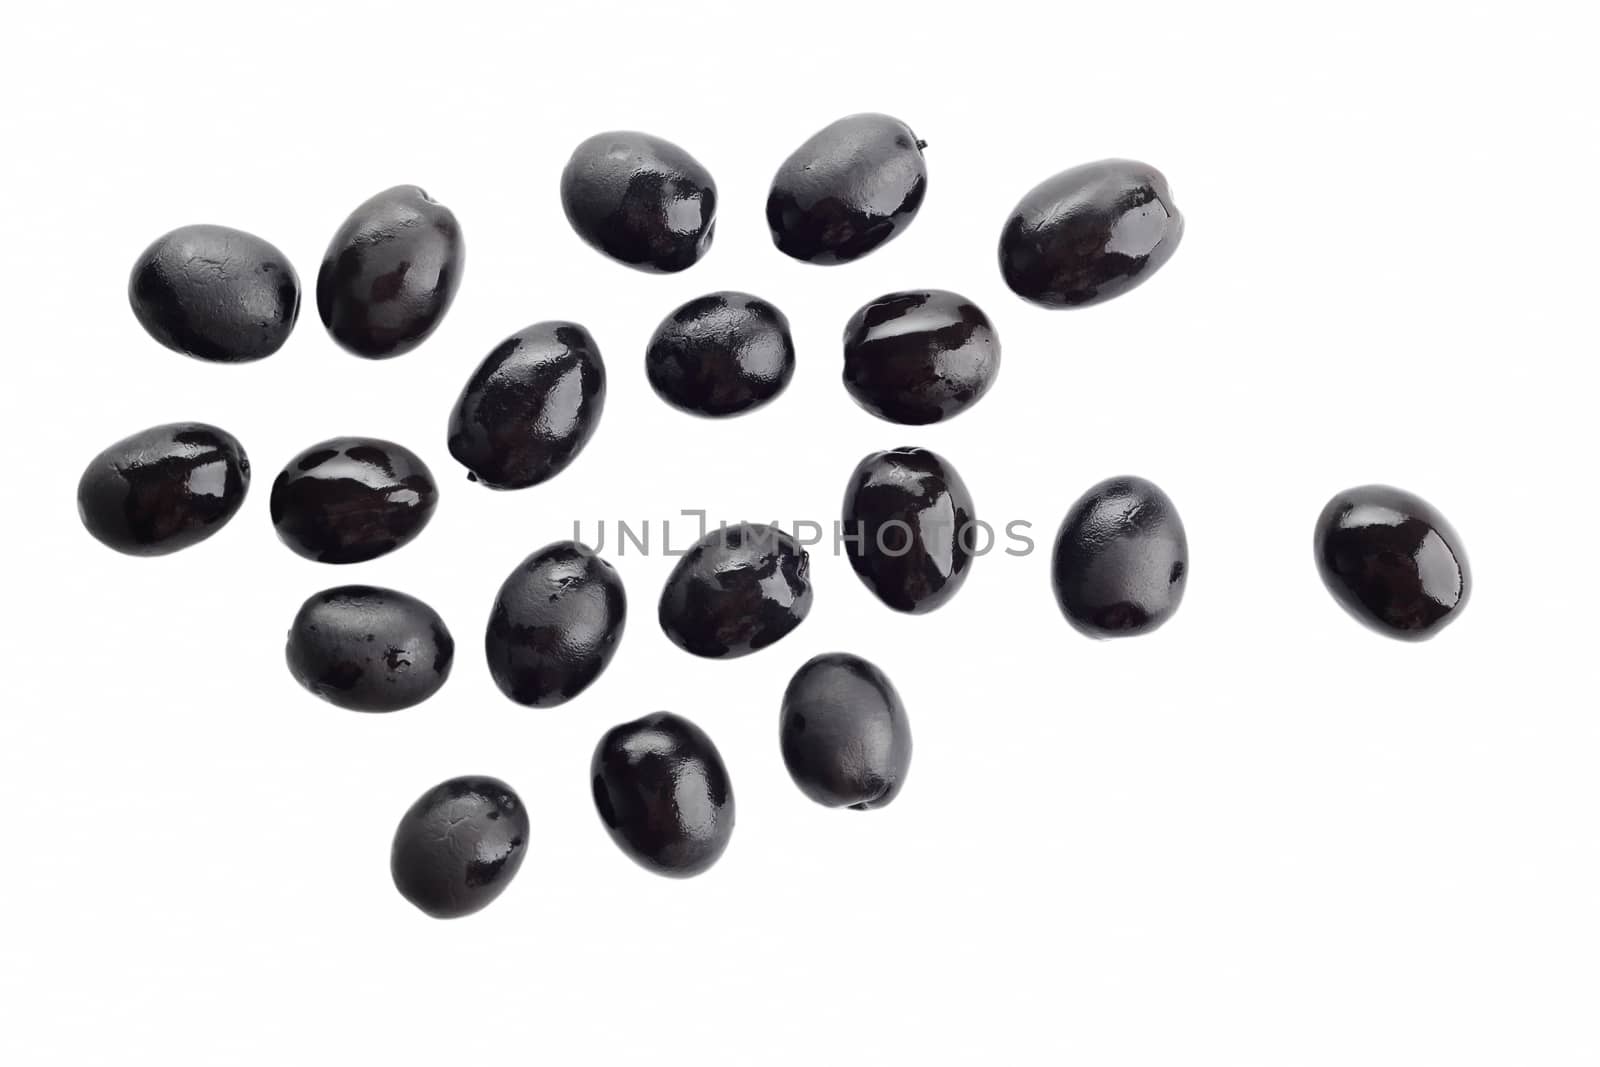 Black olives isolated on white background.